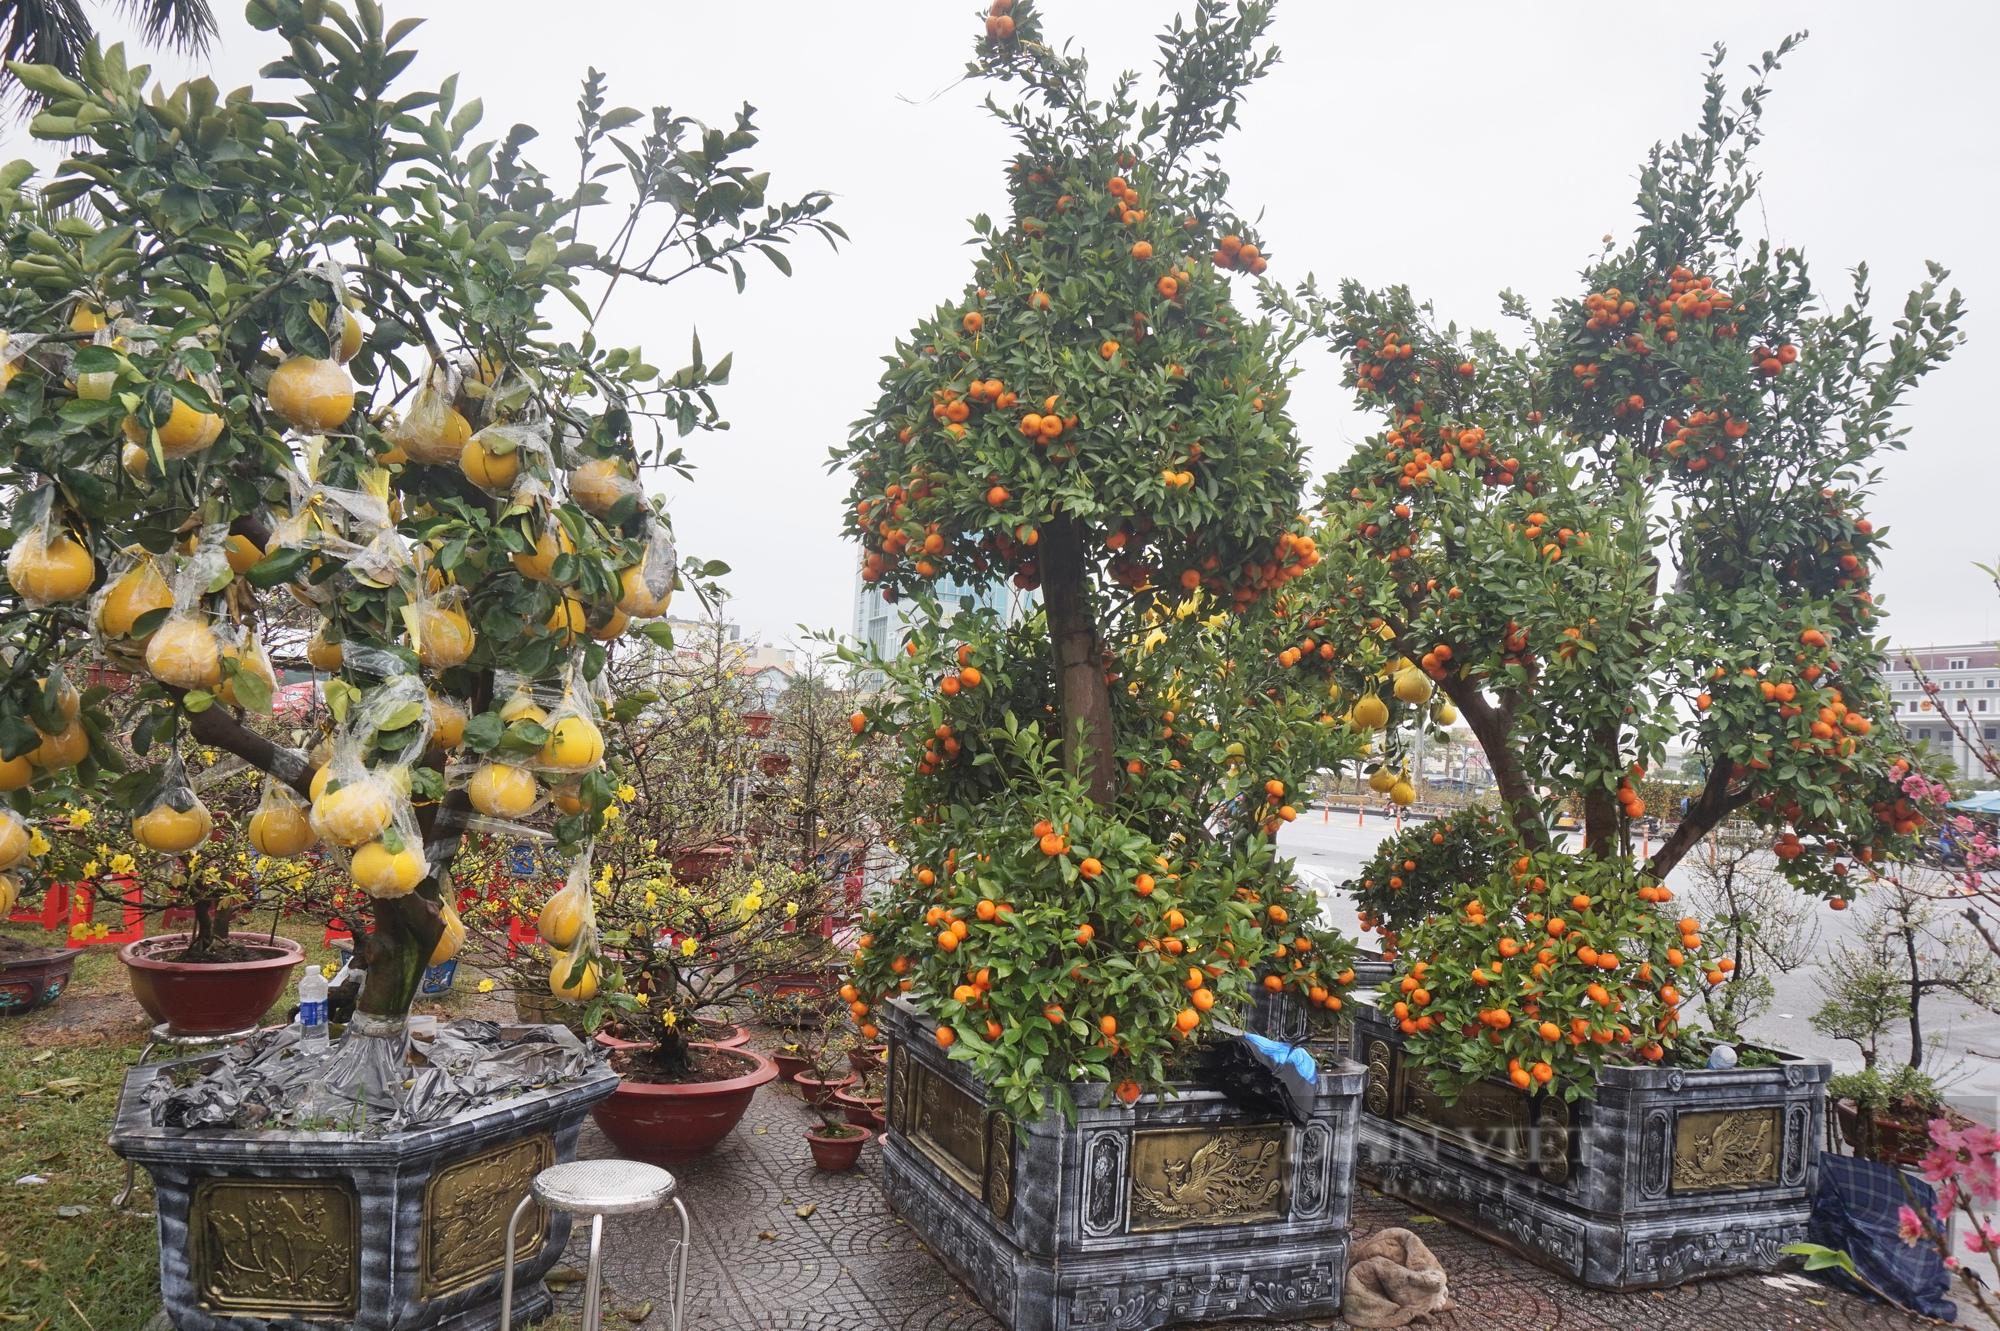 Ngắm cây quýt, bưởi cổ thụ độc nhất tại chợ hoa xuân Đà Nẵng 2023 - Ảnh 1.